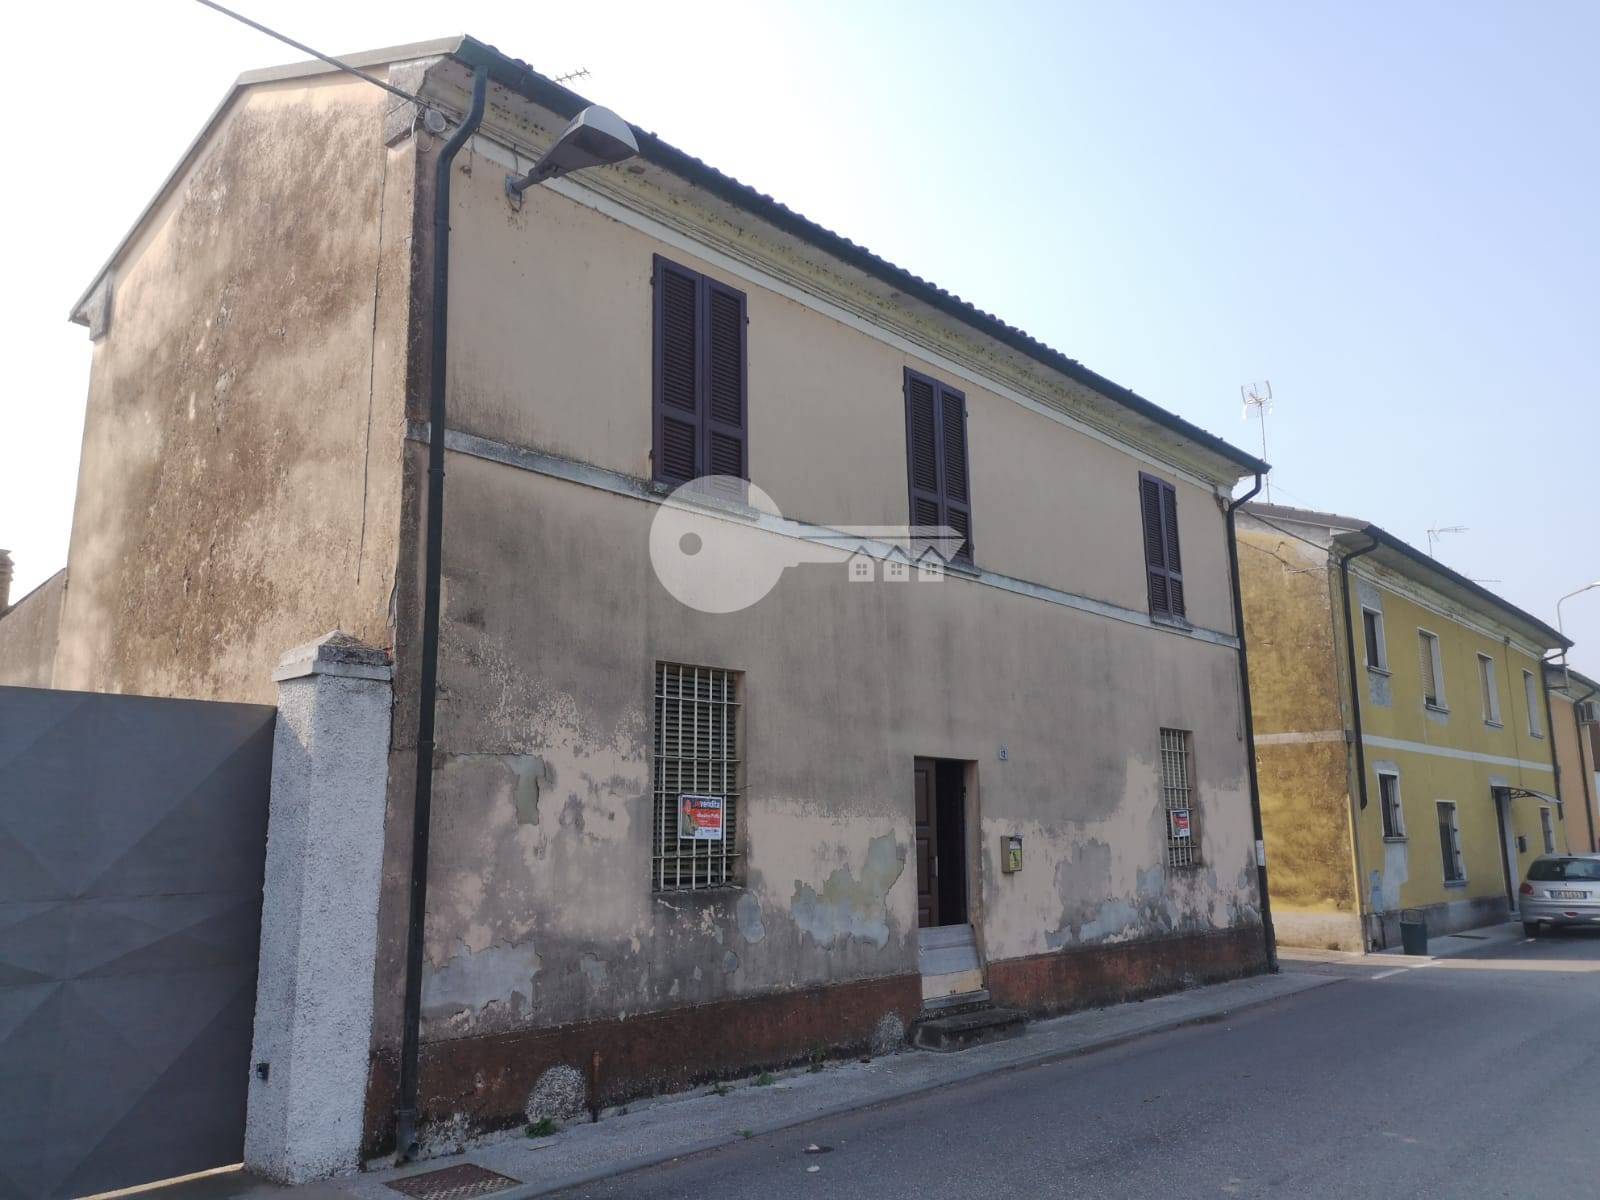 Rustico / Casale in vendita a Volongo, 7 locali, prezzo € 39.000 | PortaleAgenzieImmobiliari.it